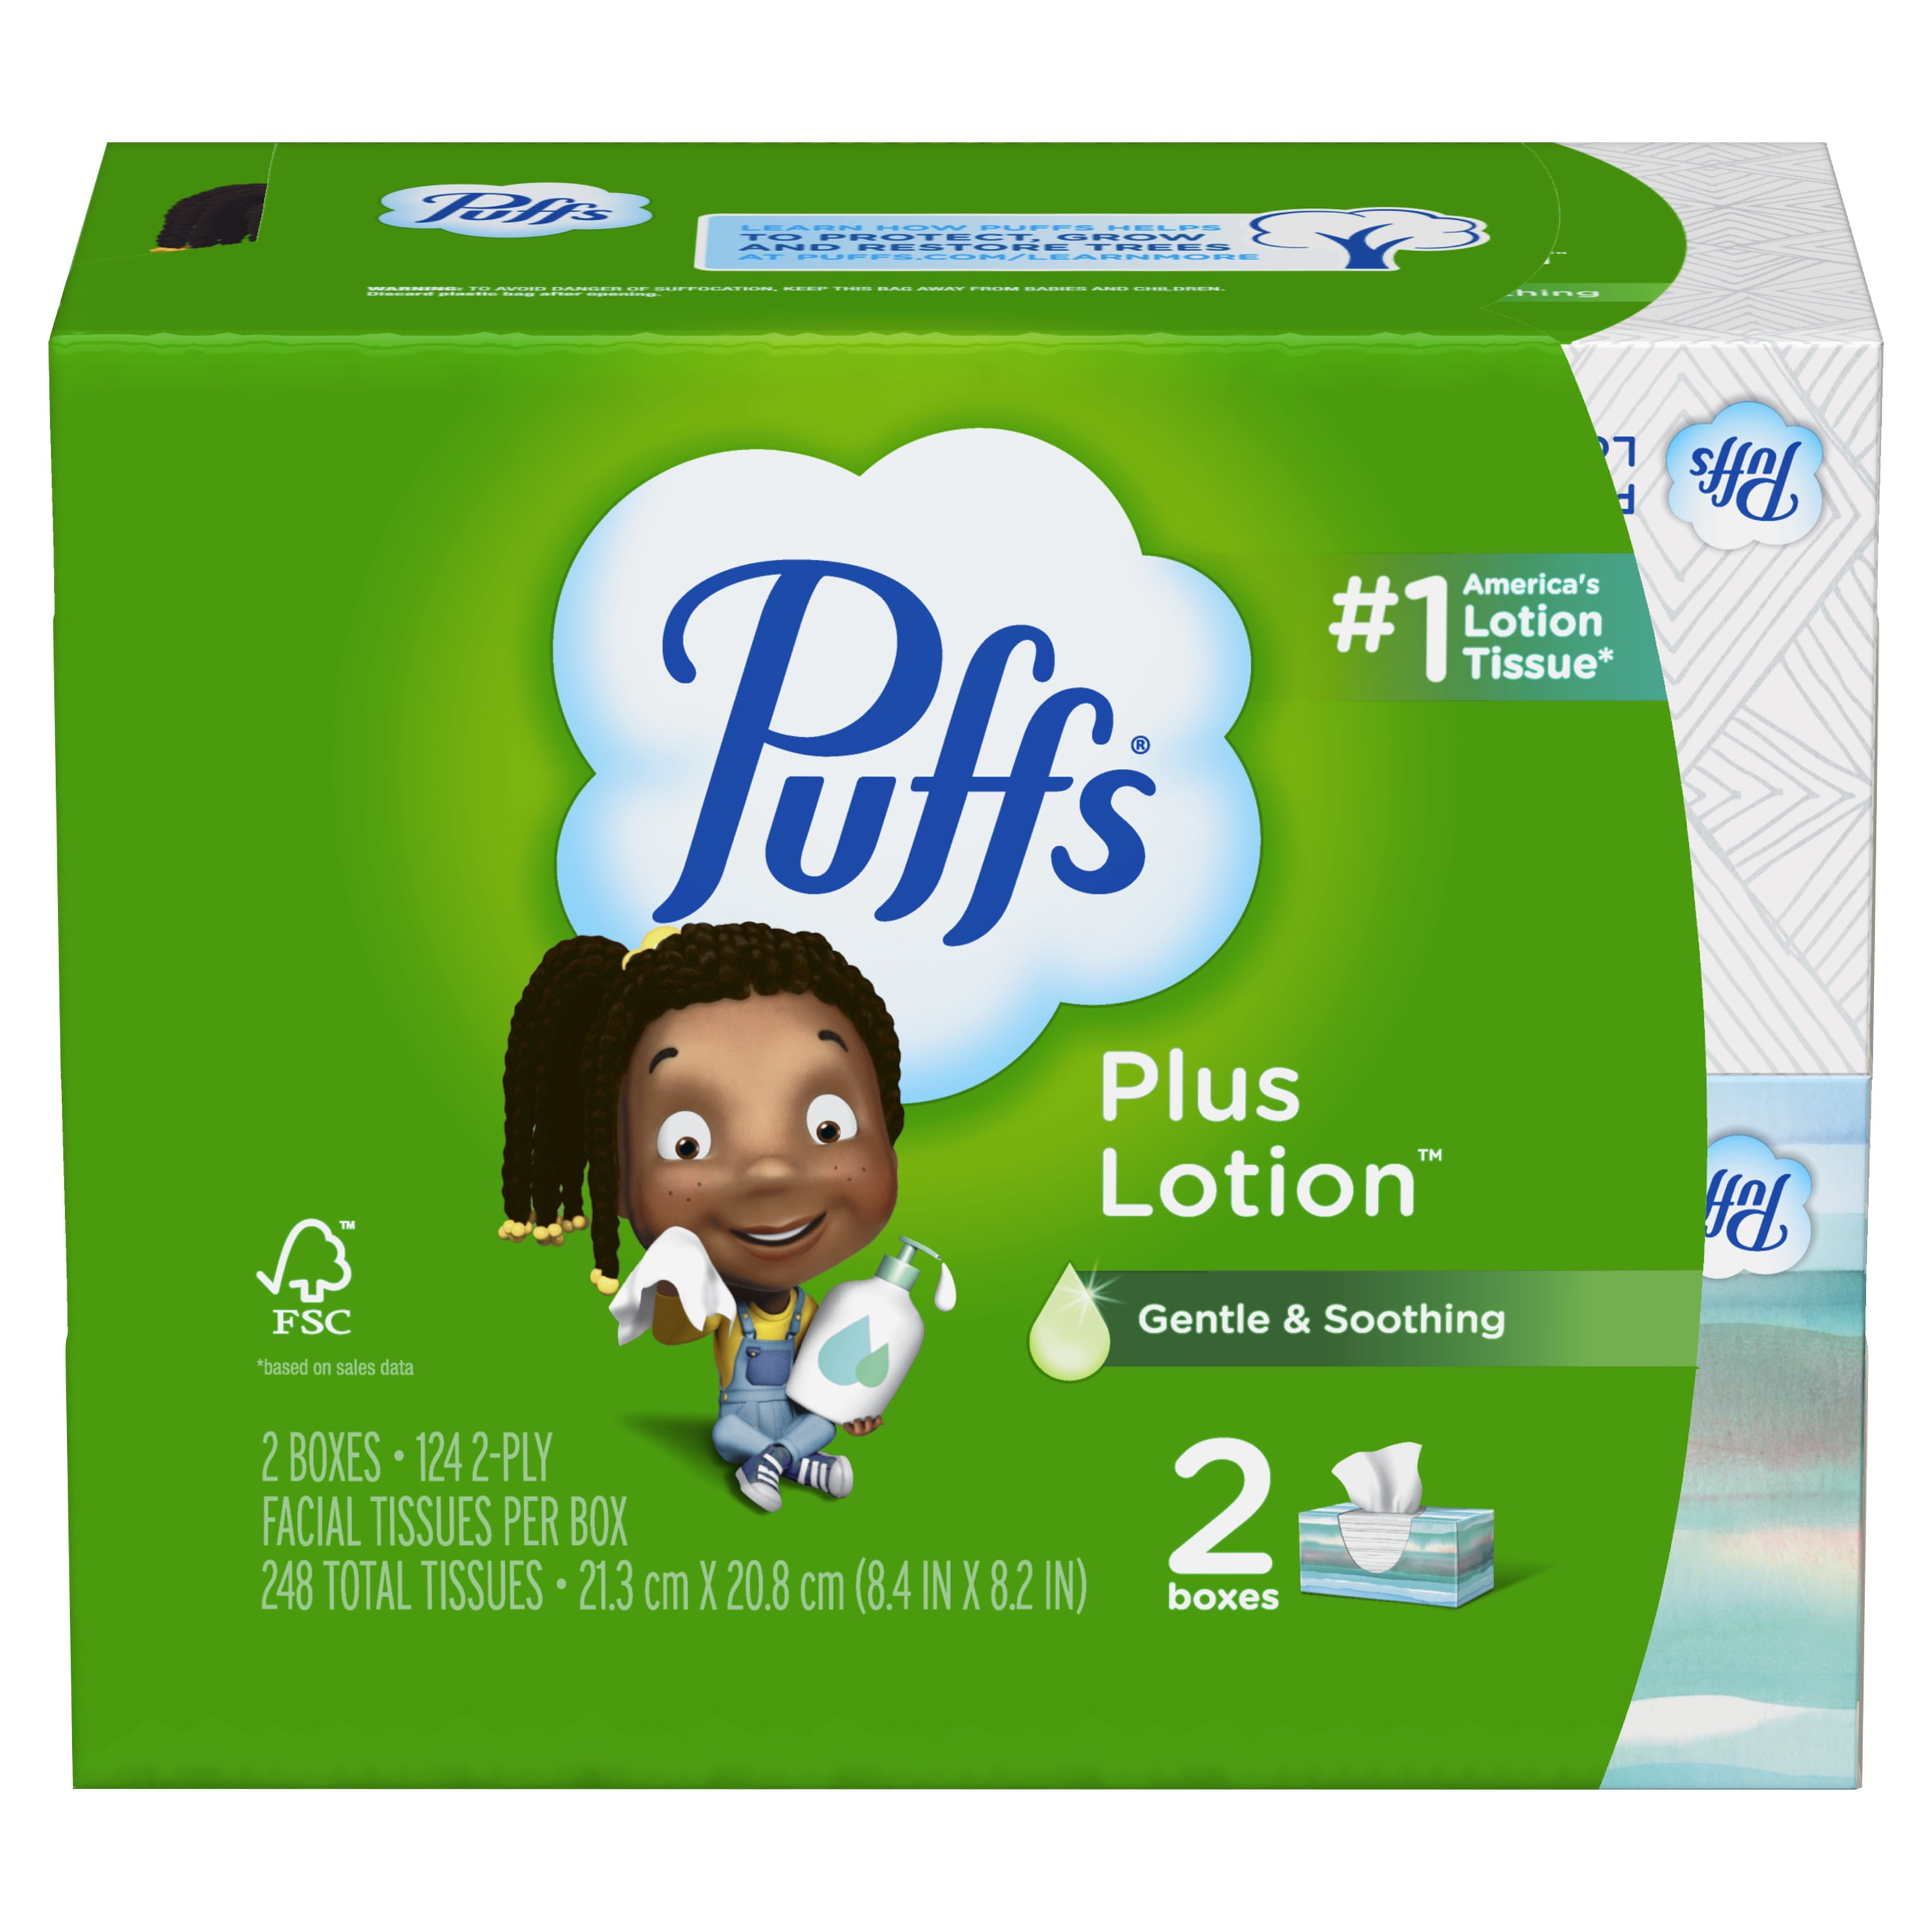 Puffs Plus Lotion Facial Tissues, 1 Regular Box, 68 Tissues per